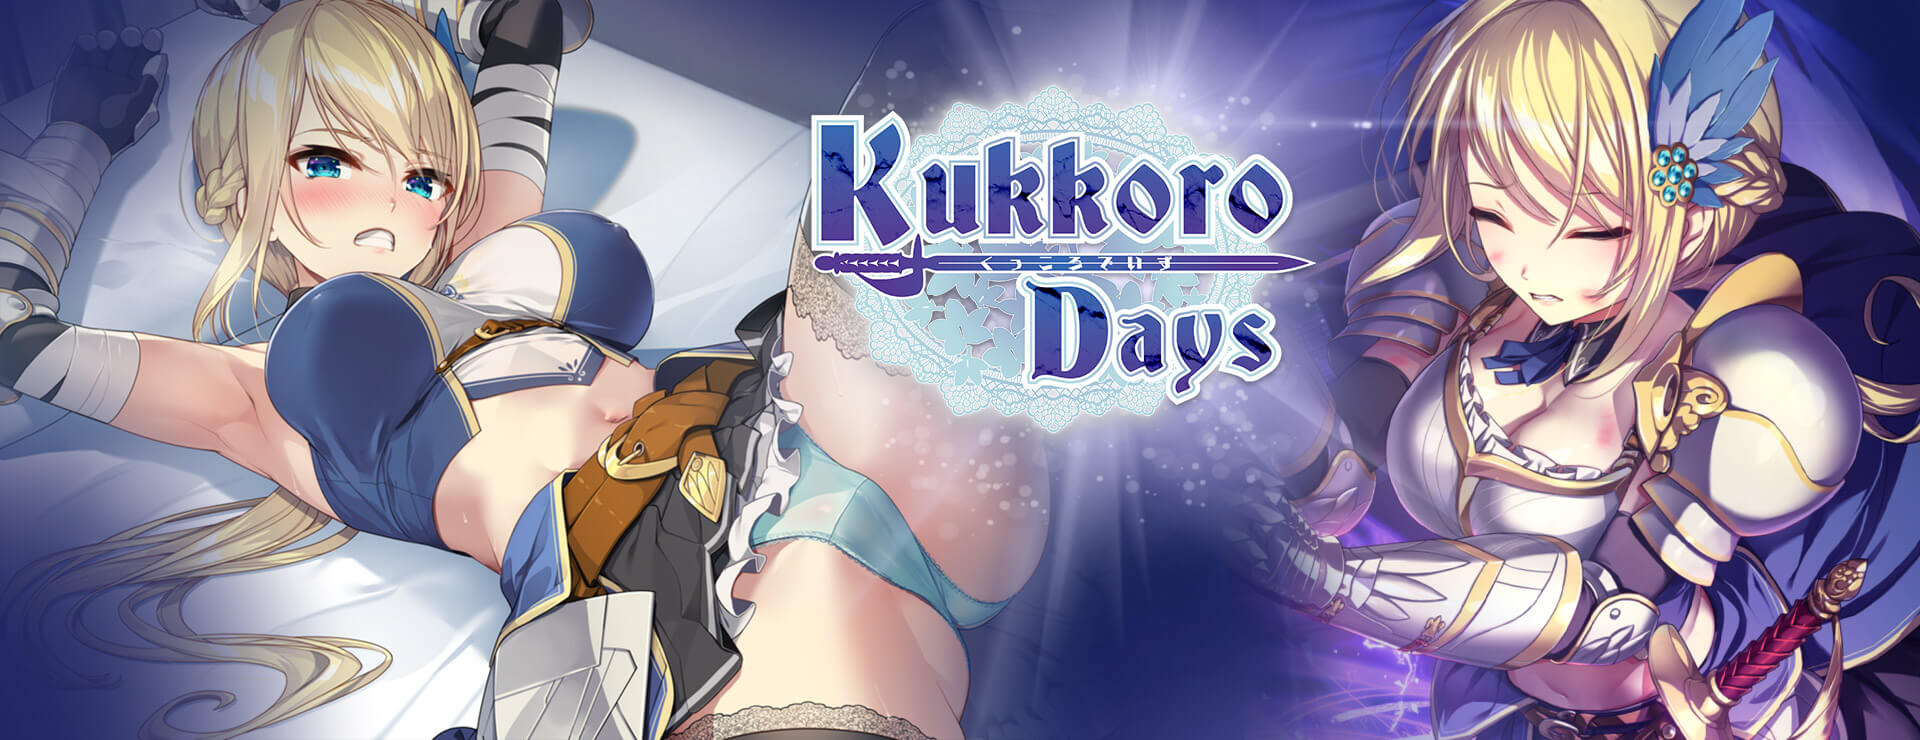 Kukkoro Days - ビジュアルノベル ゲーム